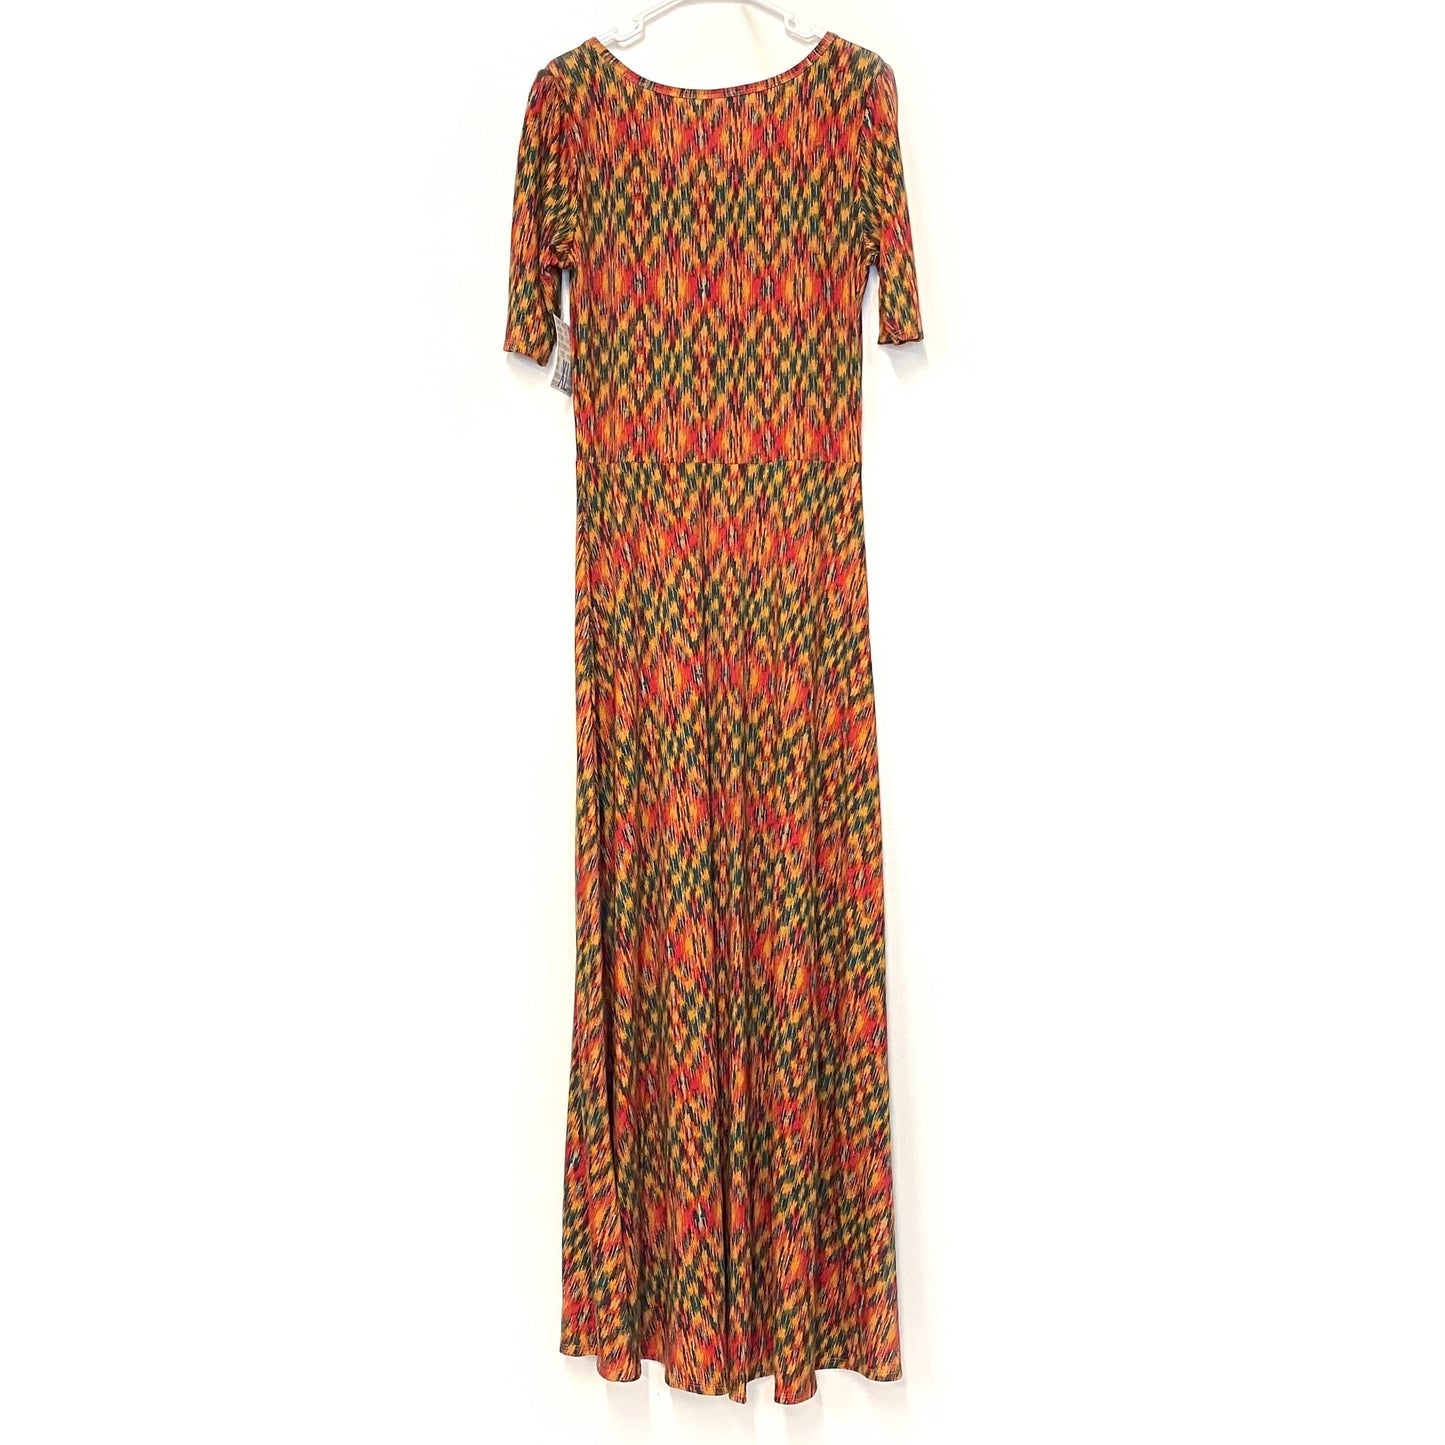 LuLaRoe Womens S Red/Green/Orange Abstract Ana Maxi Dress S/s NWT